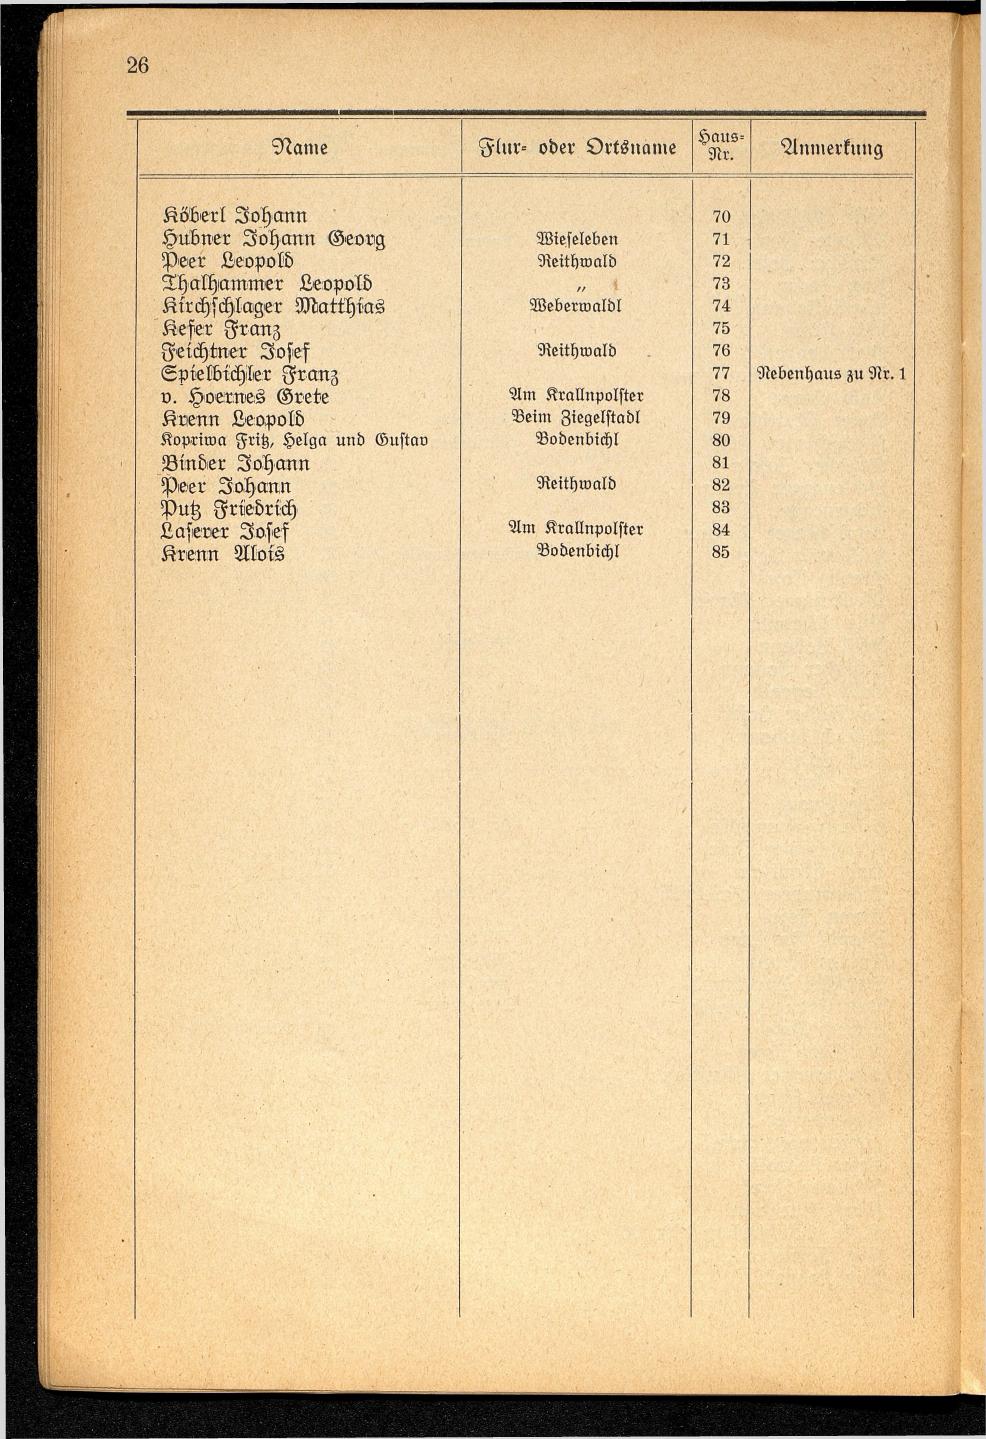 Häuser-Verzeichnis der Gemeinde Goisern nach dem Stande von November 1937 - Seite 28